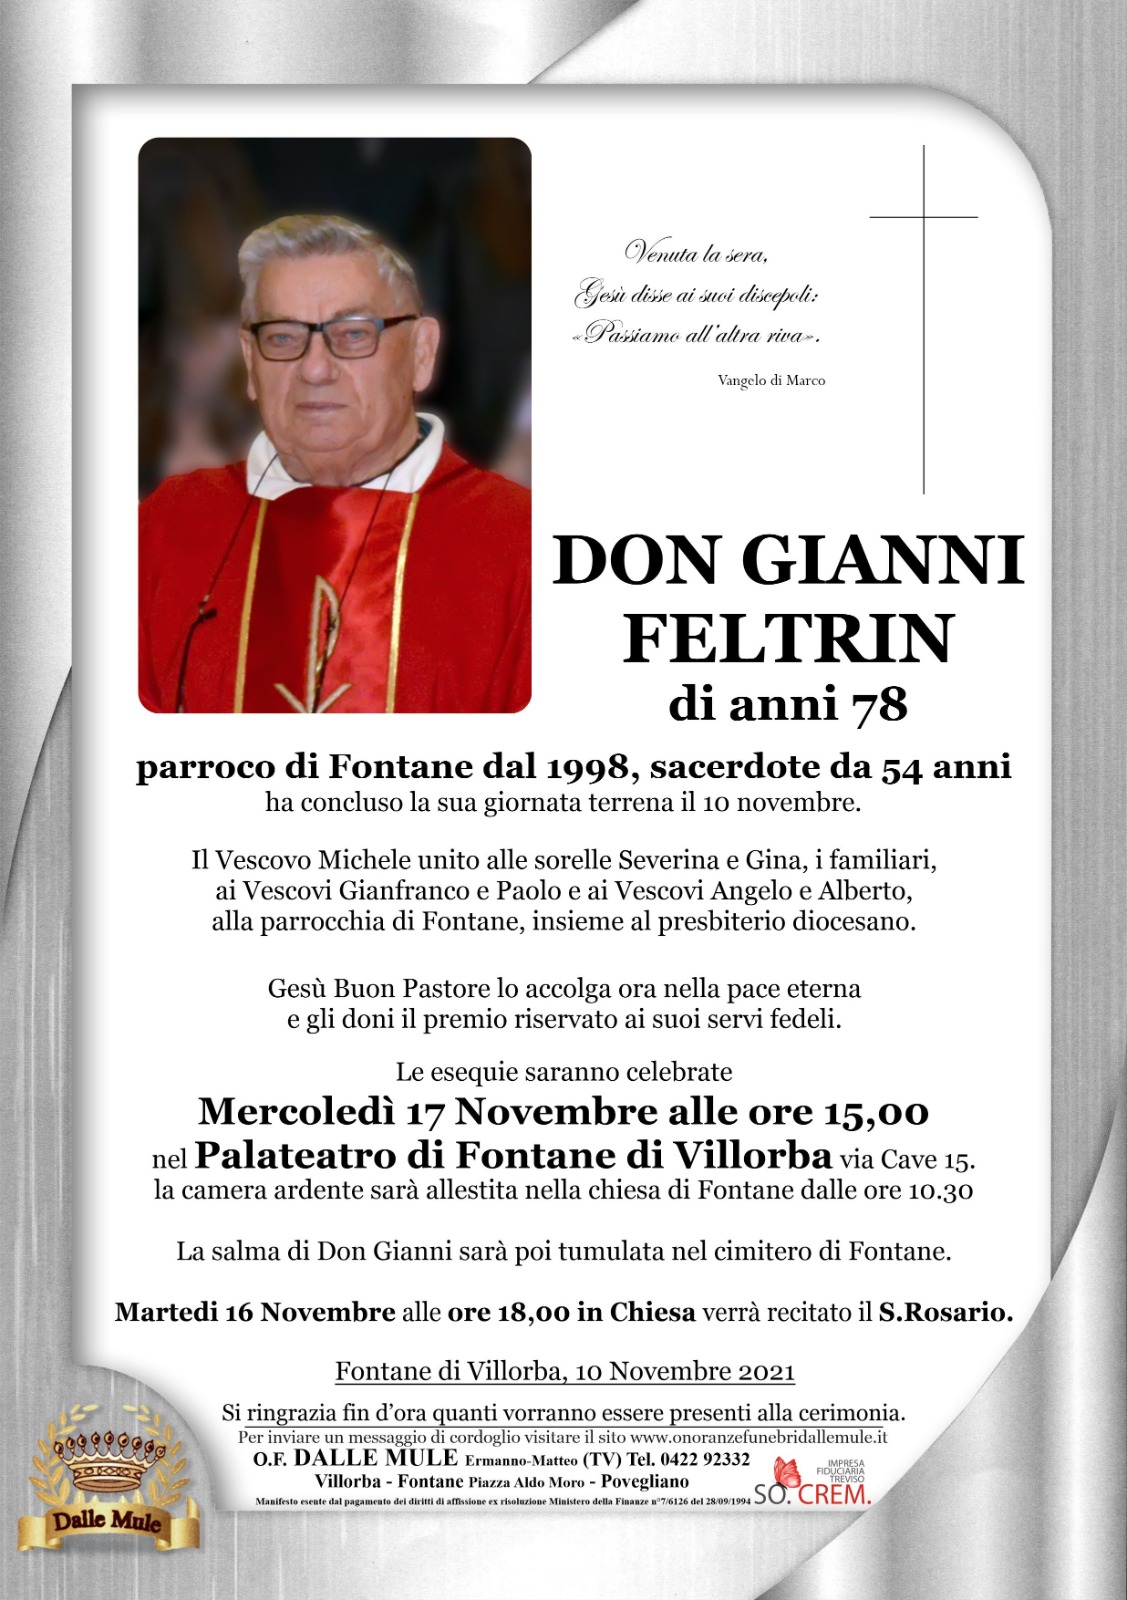 Esequie di don Gianni Feltrin